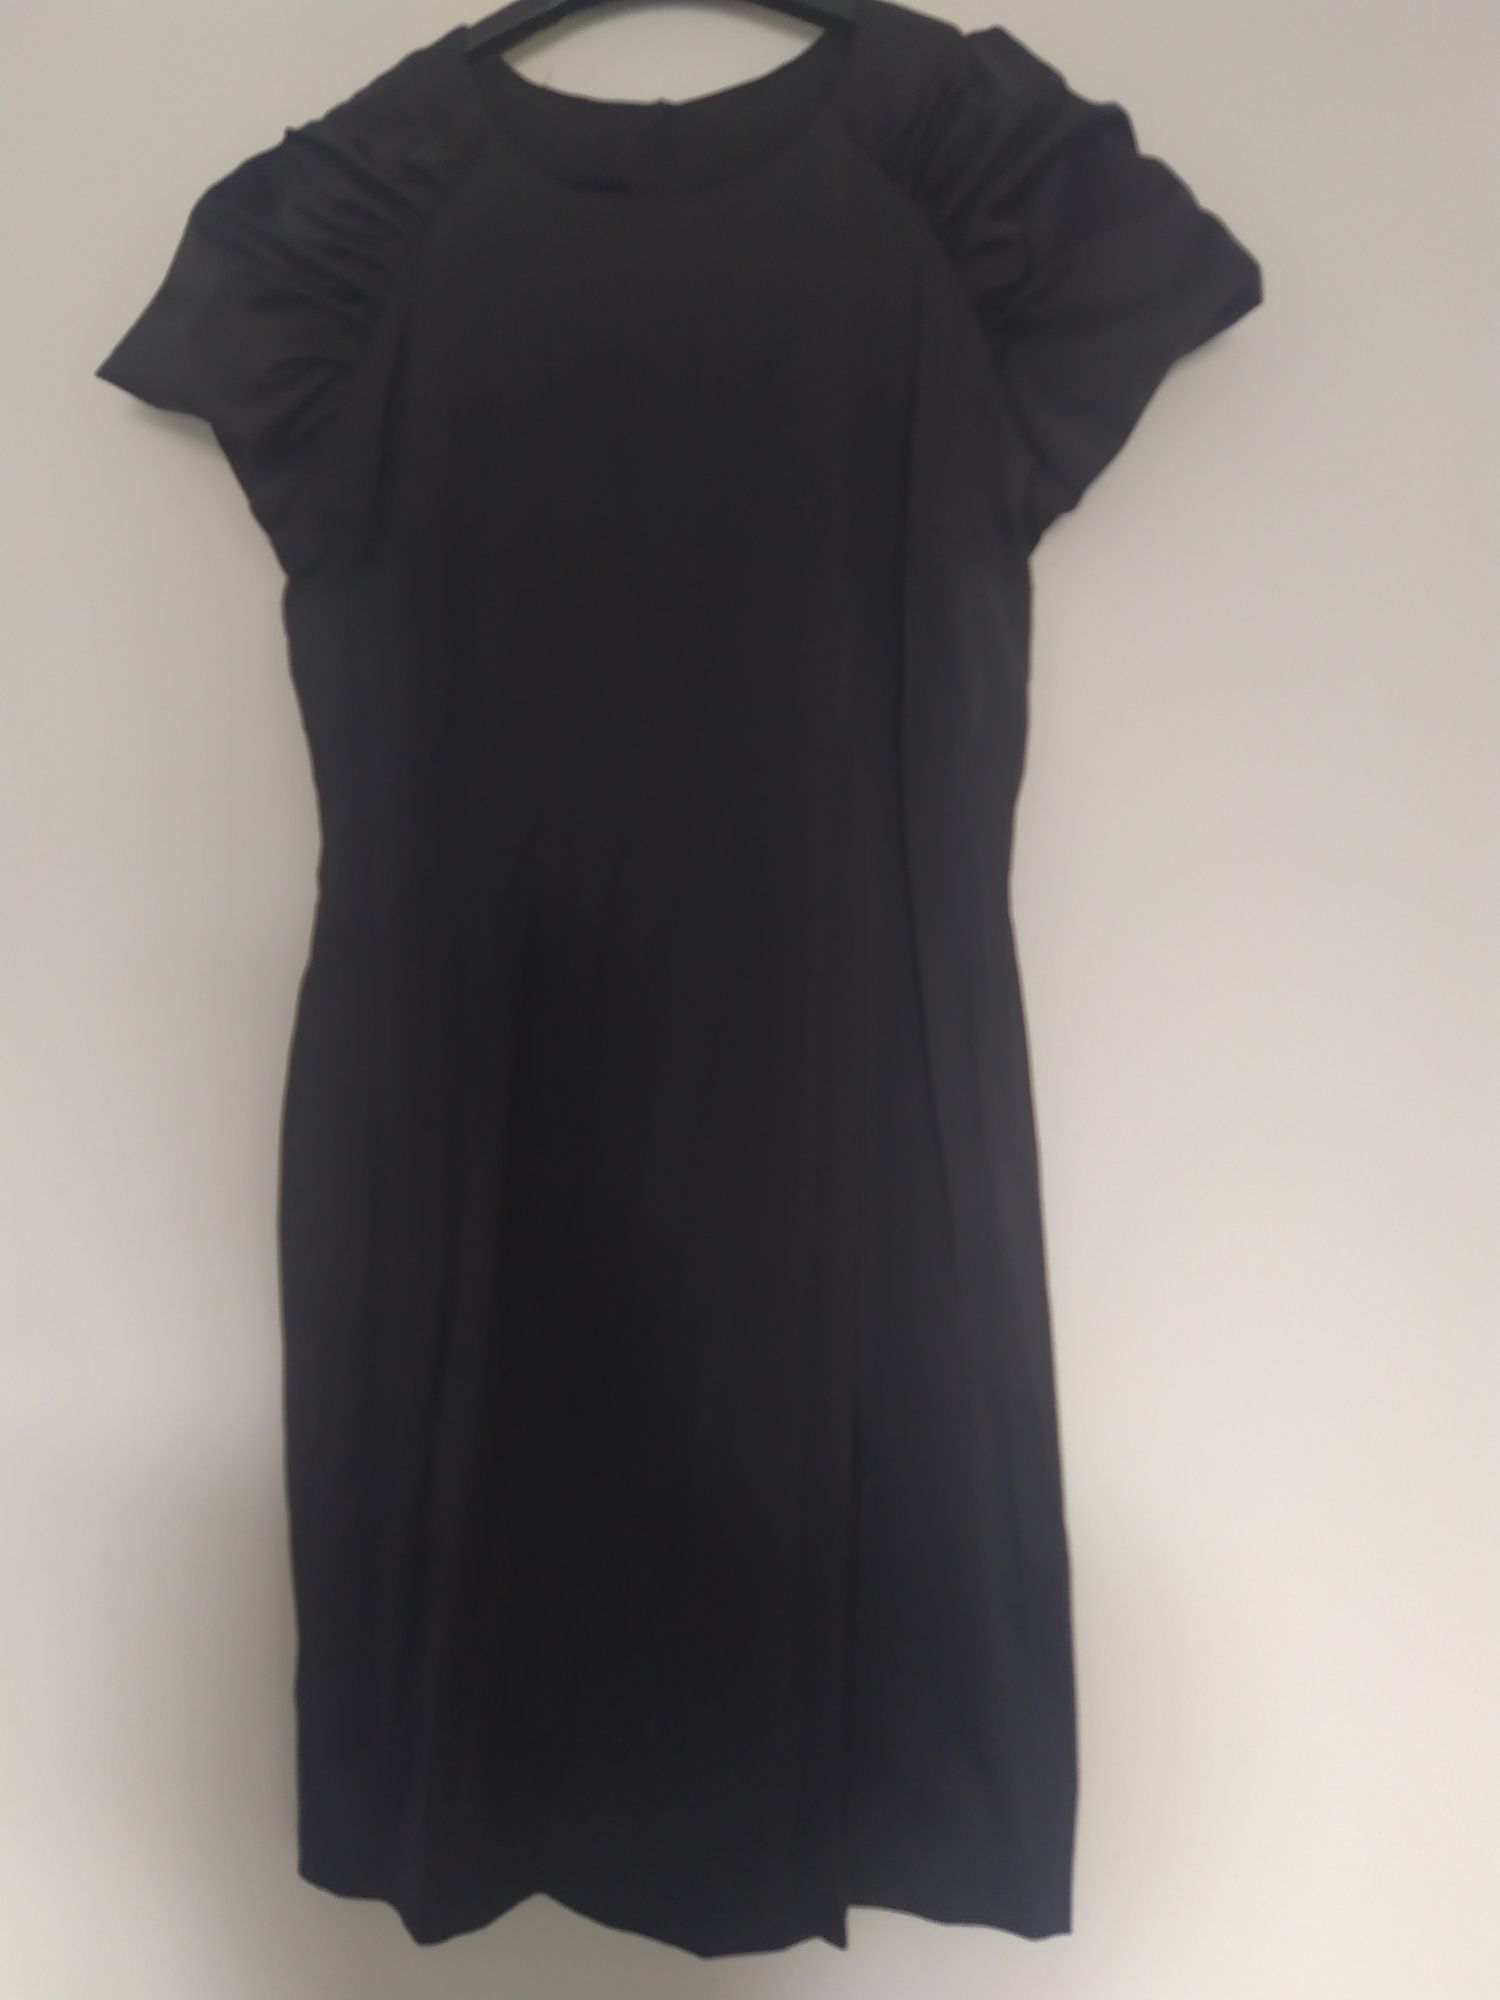 Sukienka M 38 czarna mała klasyczna